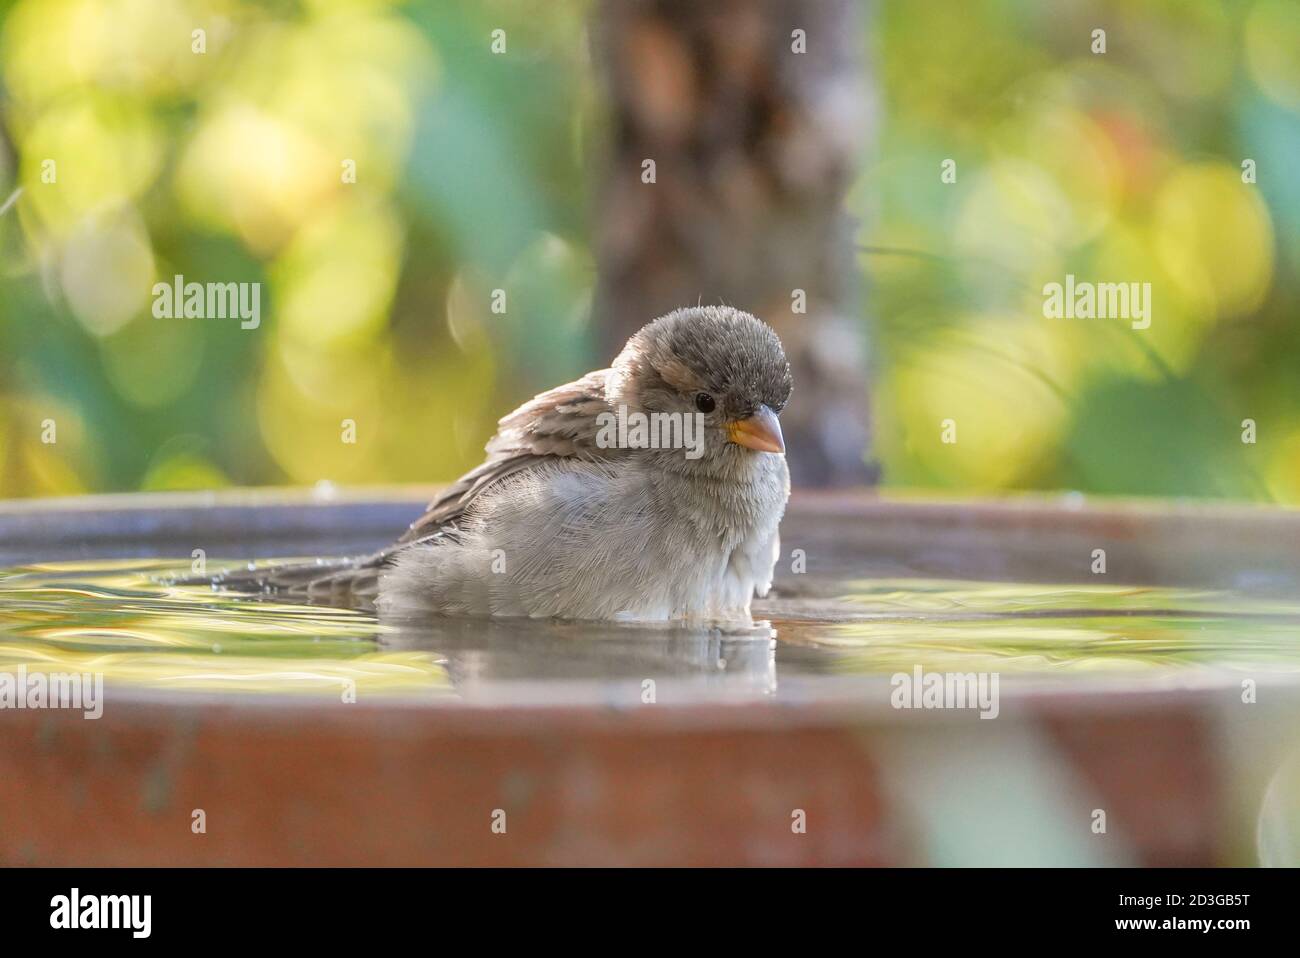 La jeune maison Sparrow a pris un bain dans un bol d'eau dans le jardin. Banque D'Images